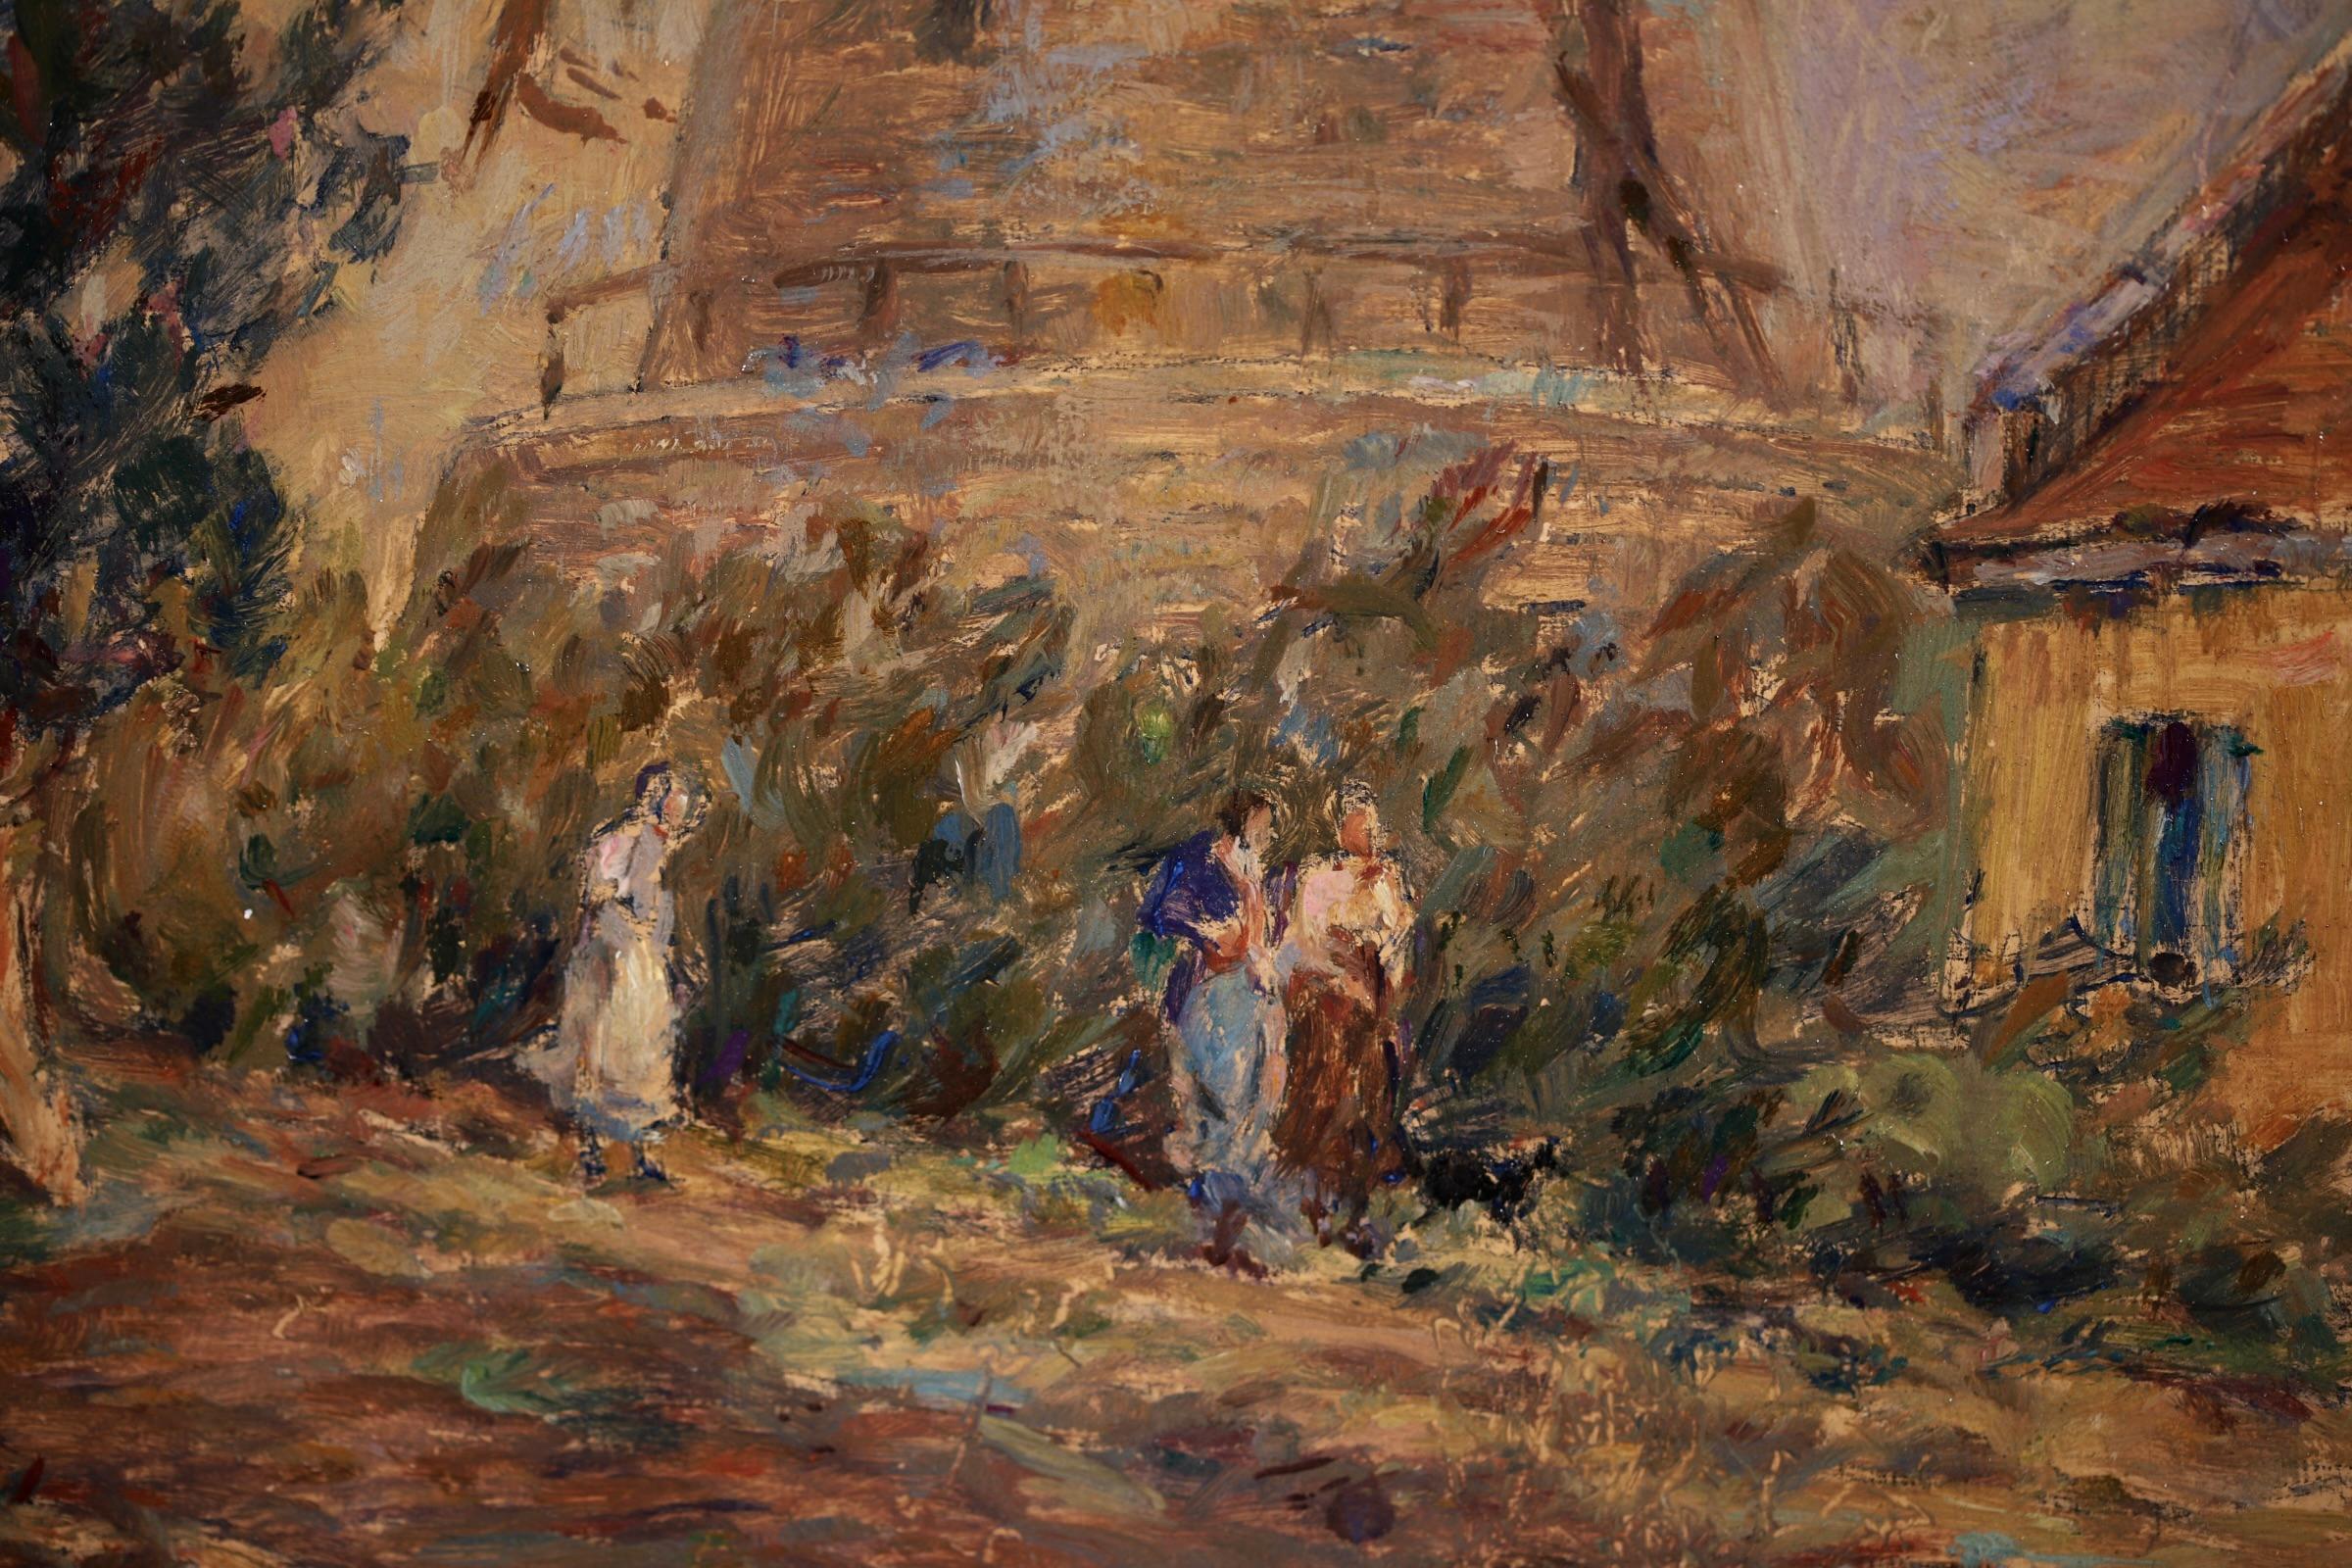 Moulin - Impressionist Oil, Windmill, Figures & Dog in Landscape by Henri Duhem 2